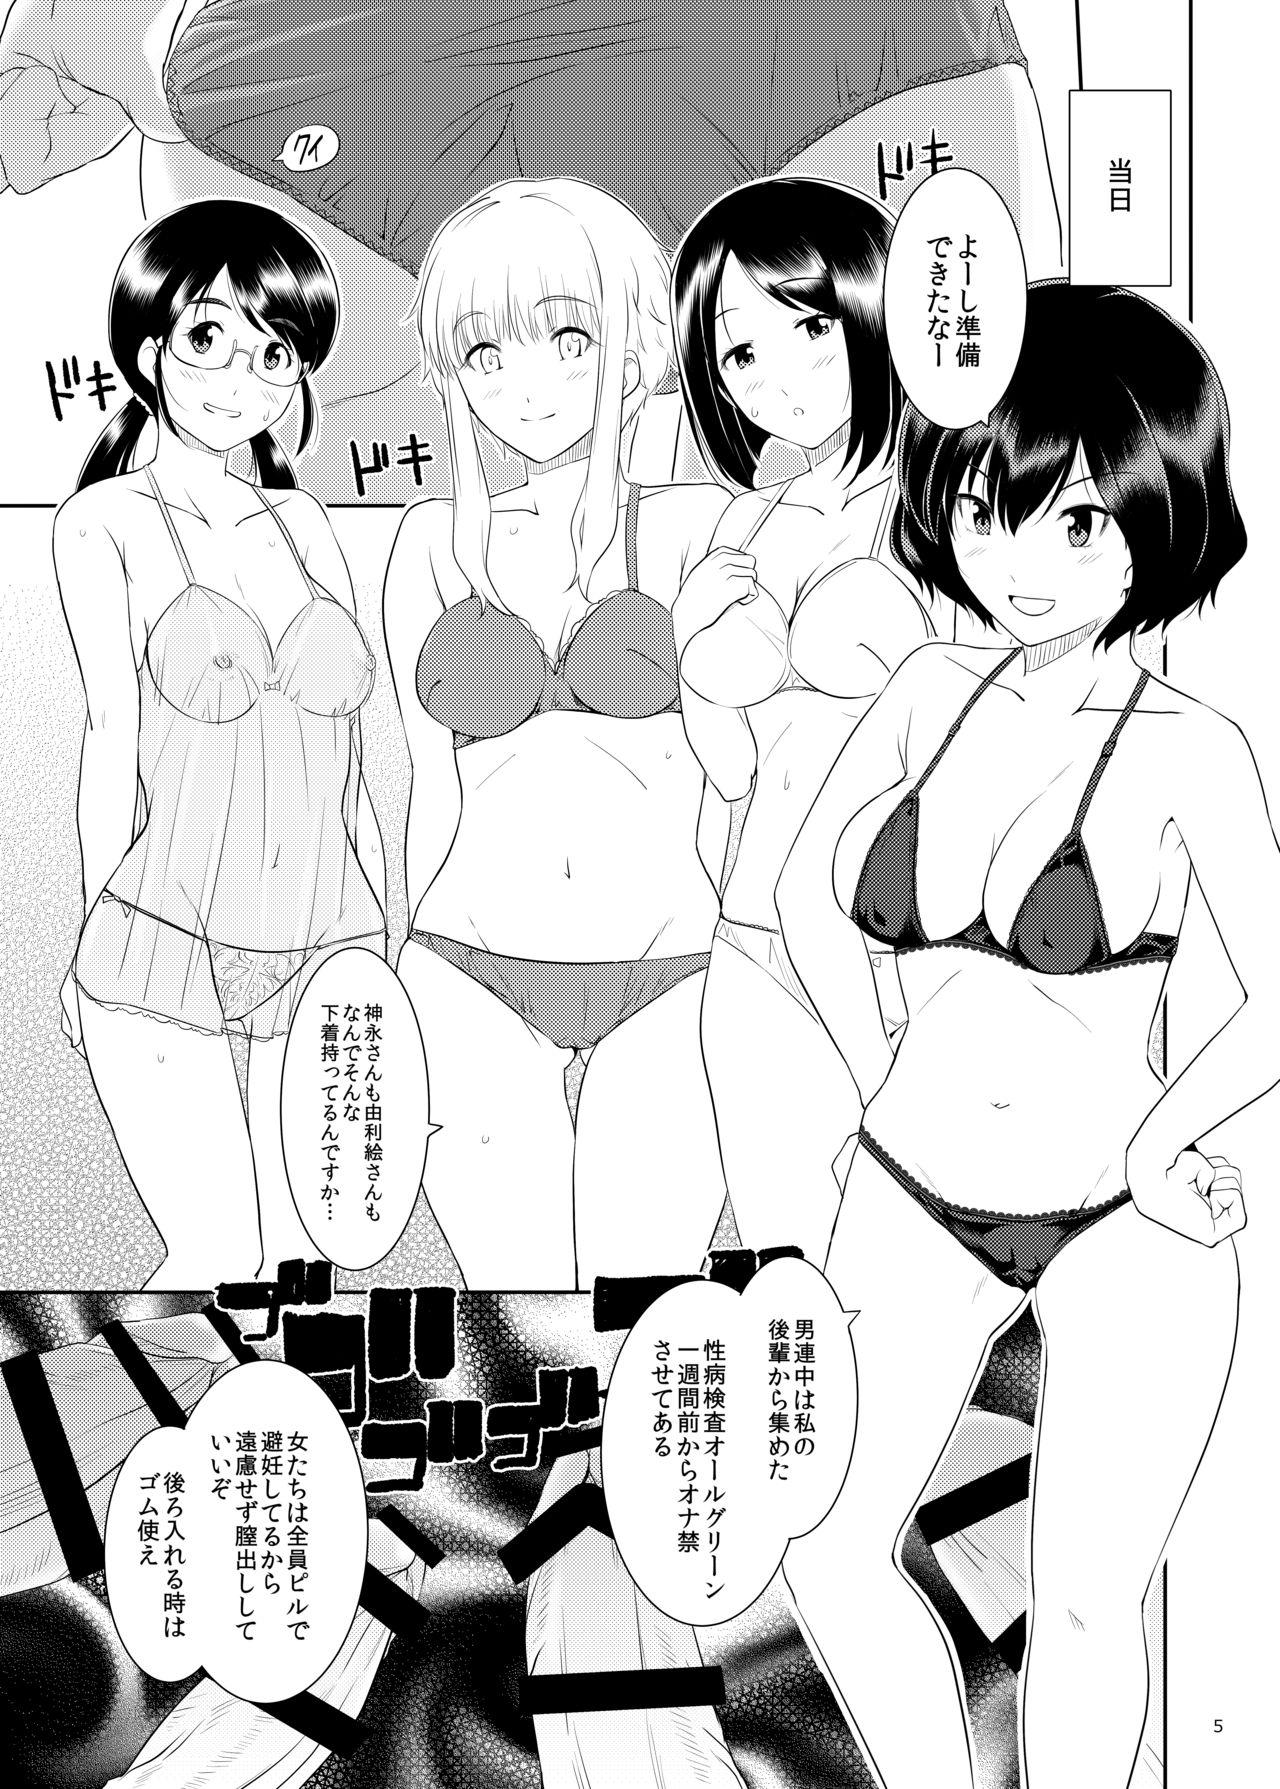 Pussysex Ku-neru Sumata 2 - Ku-neru maruta Highschool - Page 4